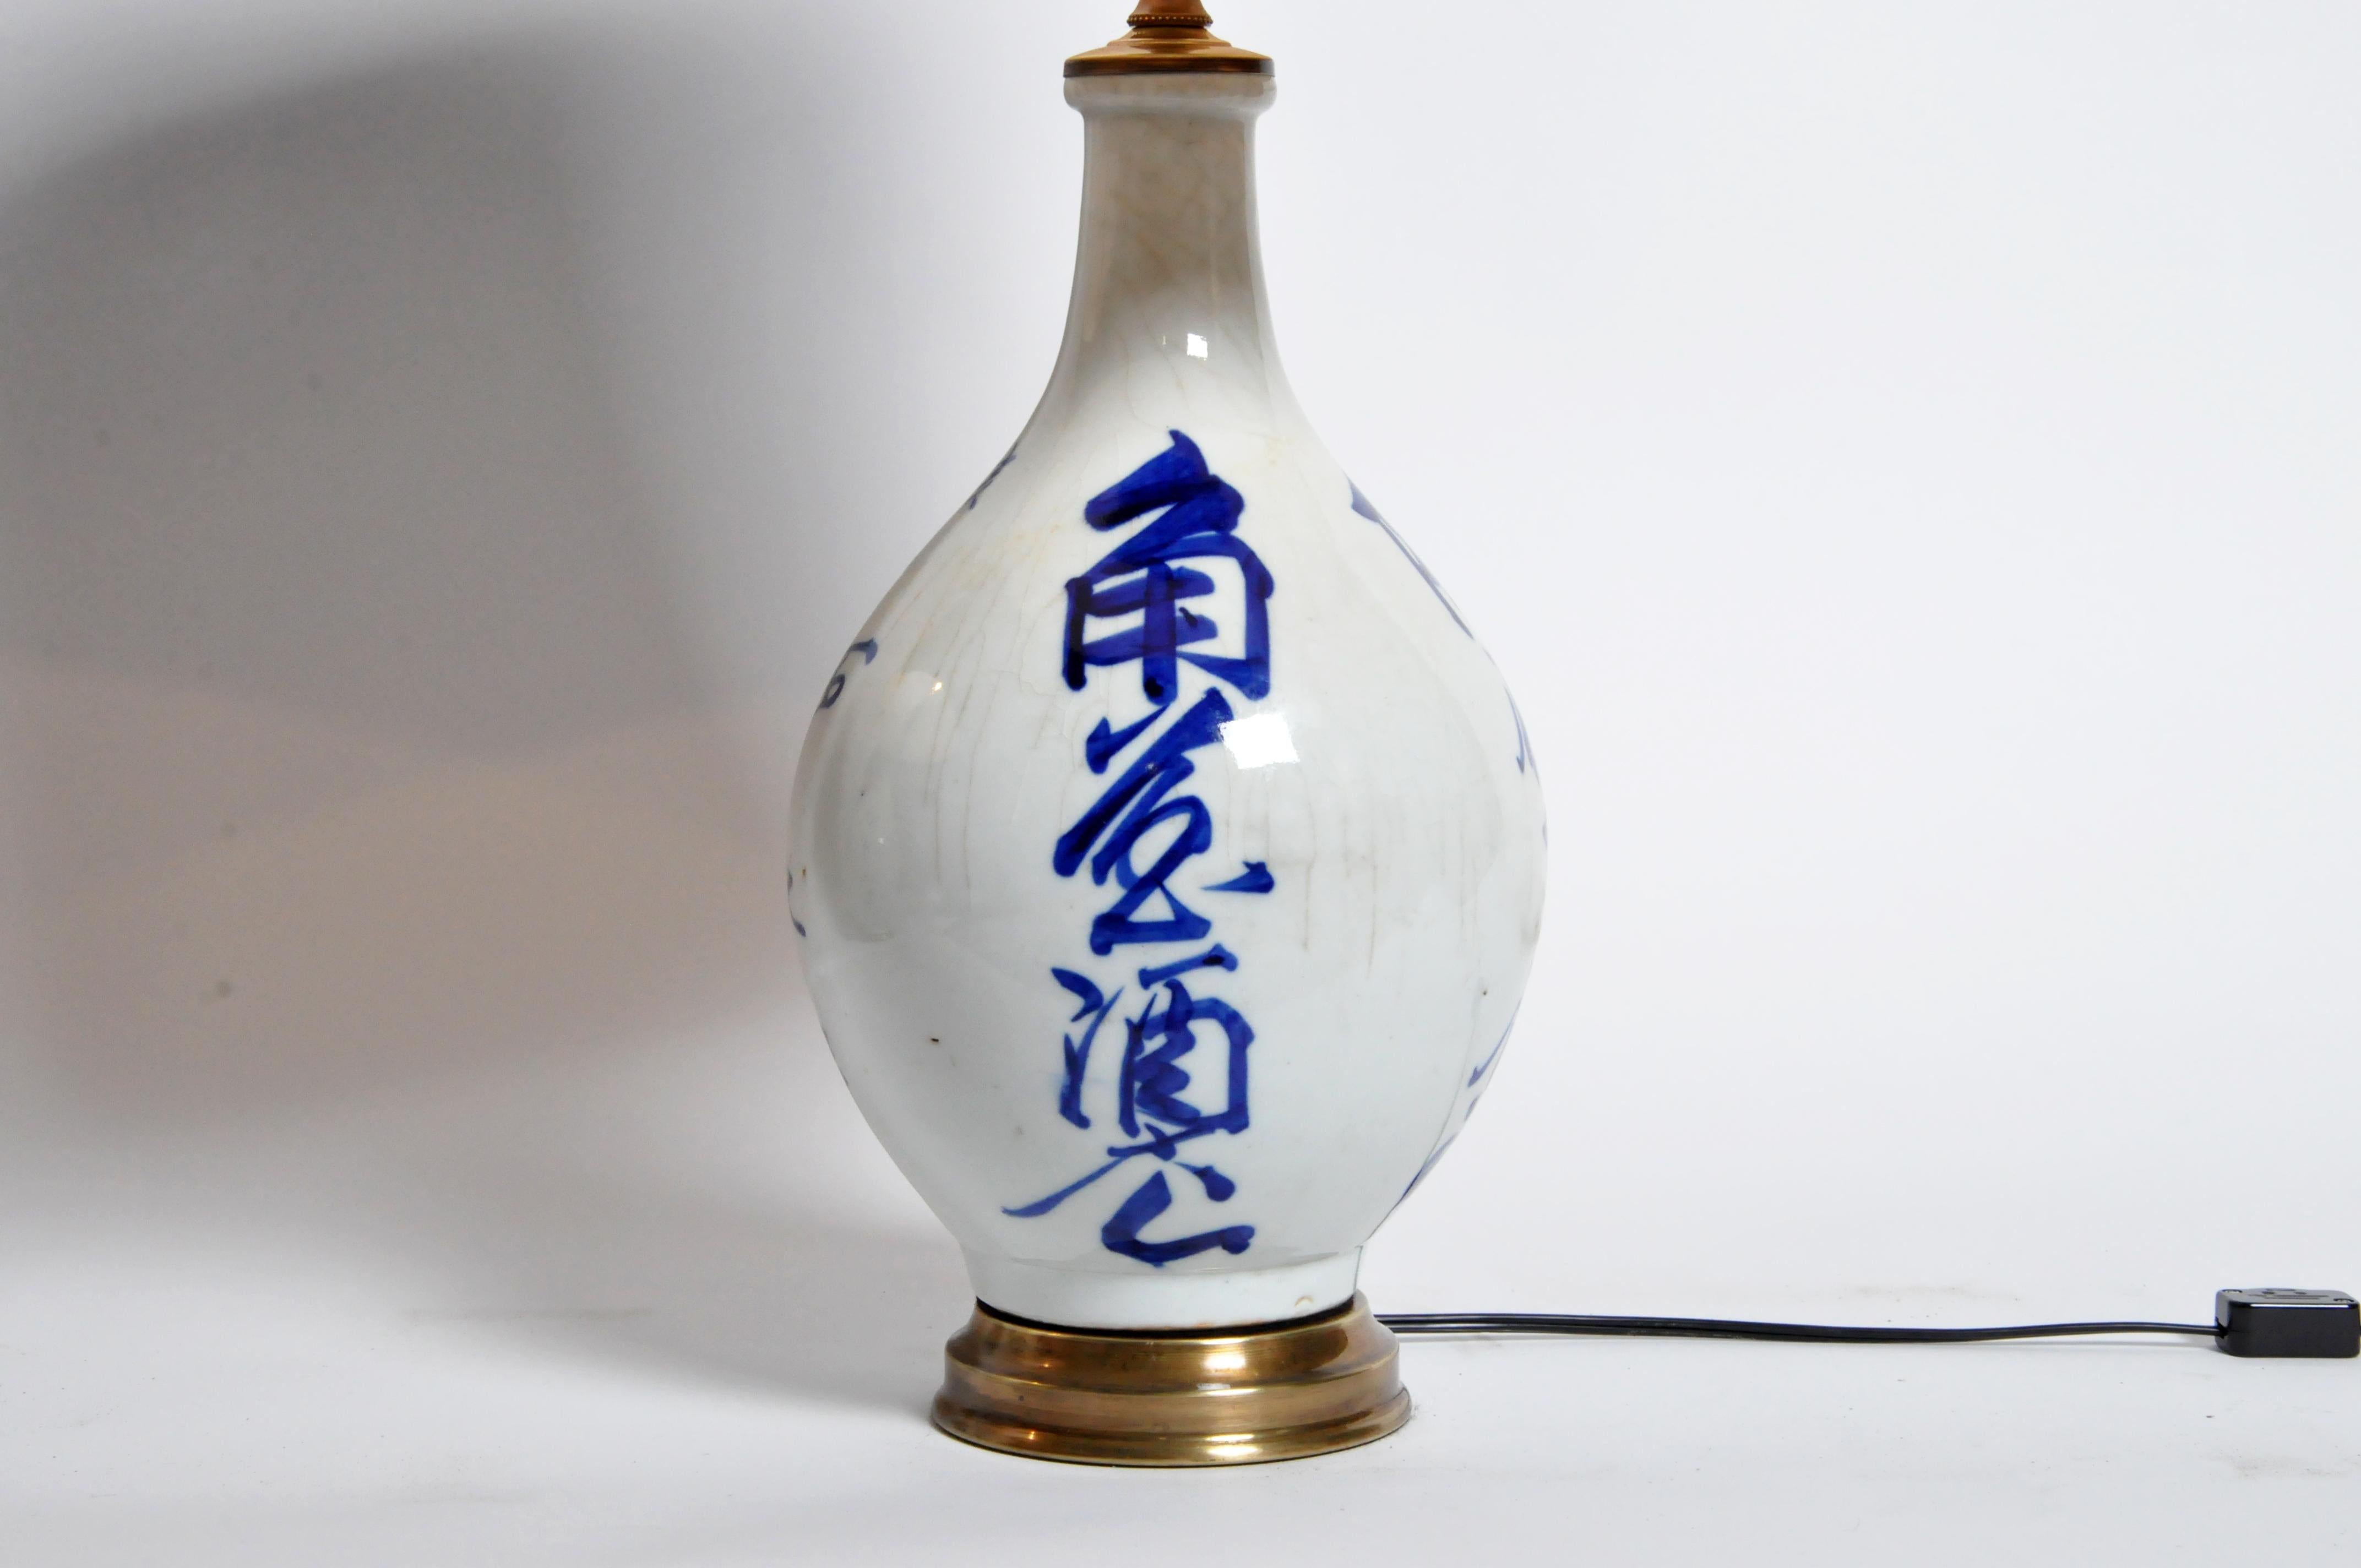 Ceramic Japanese Sake Bottles Converted to Lamps